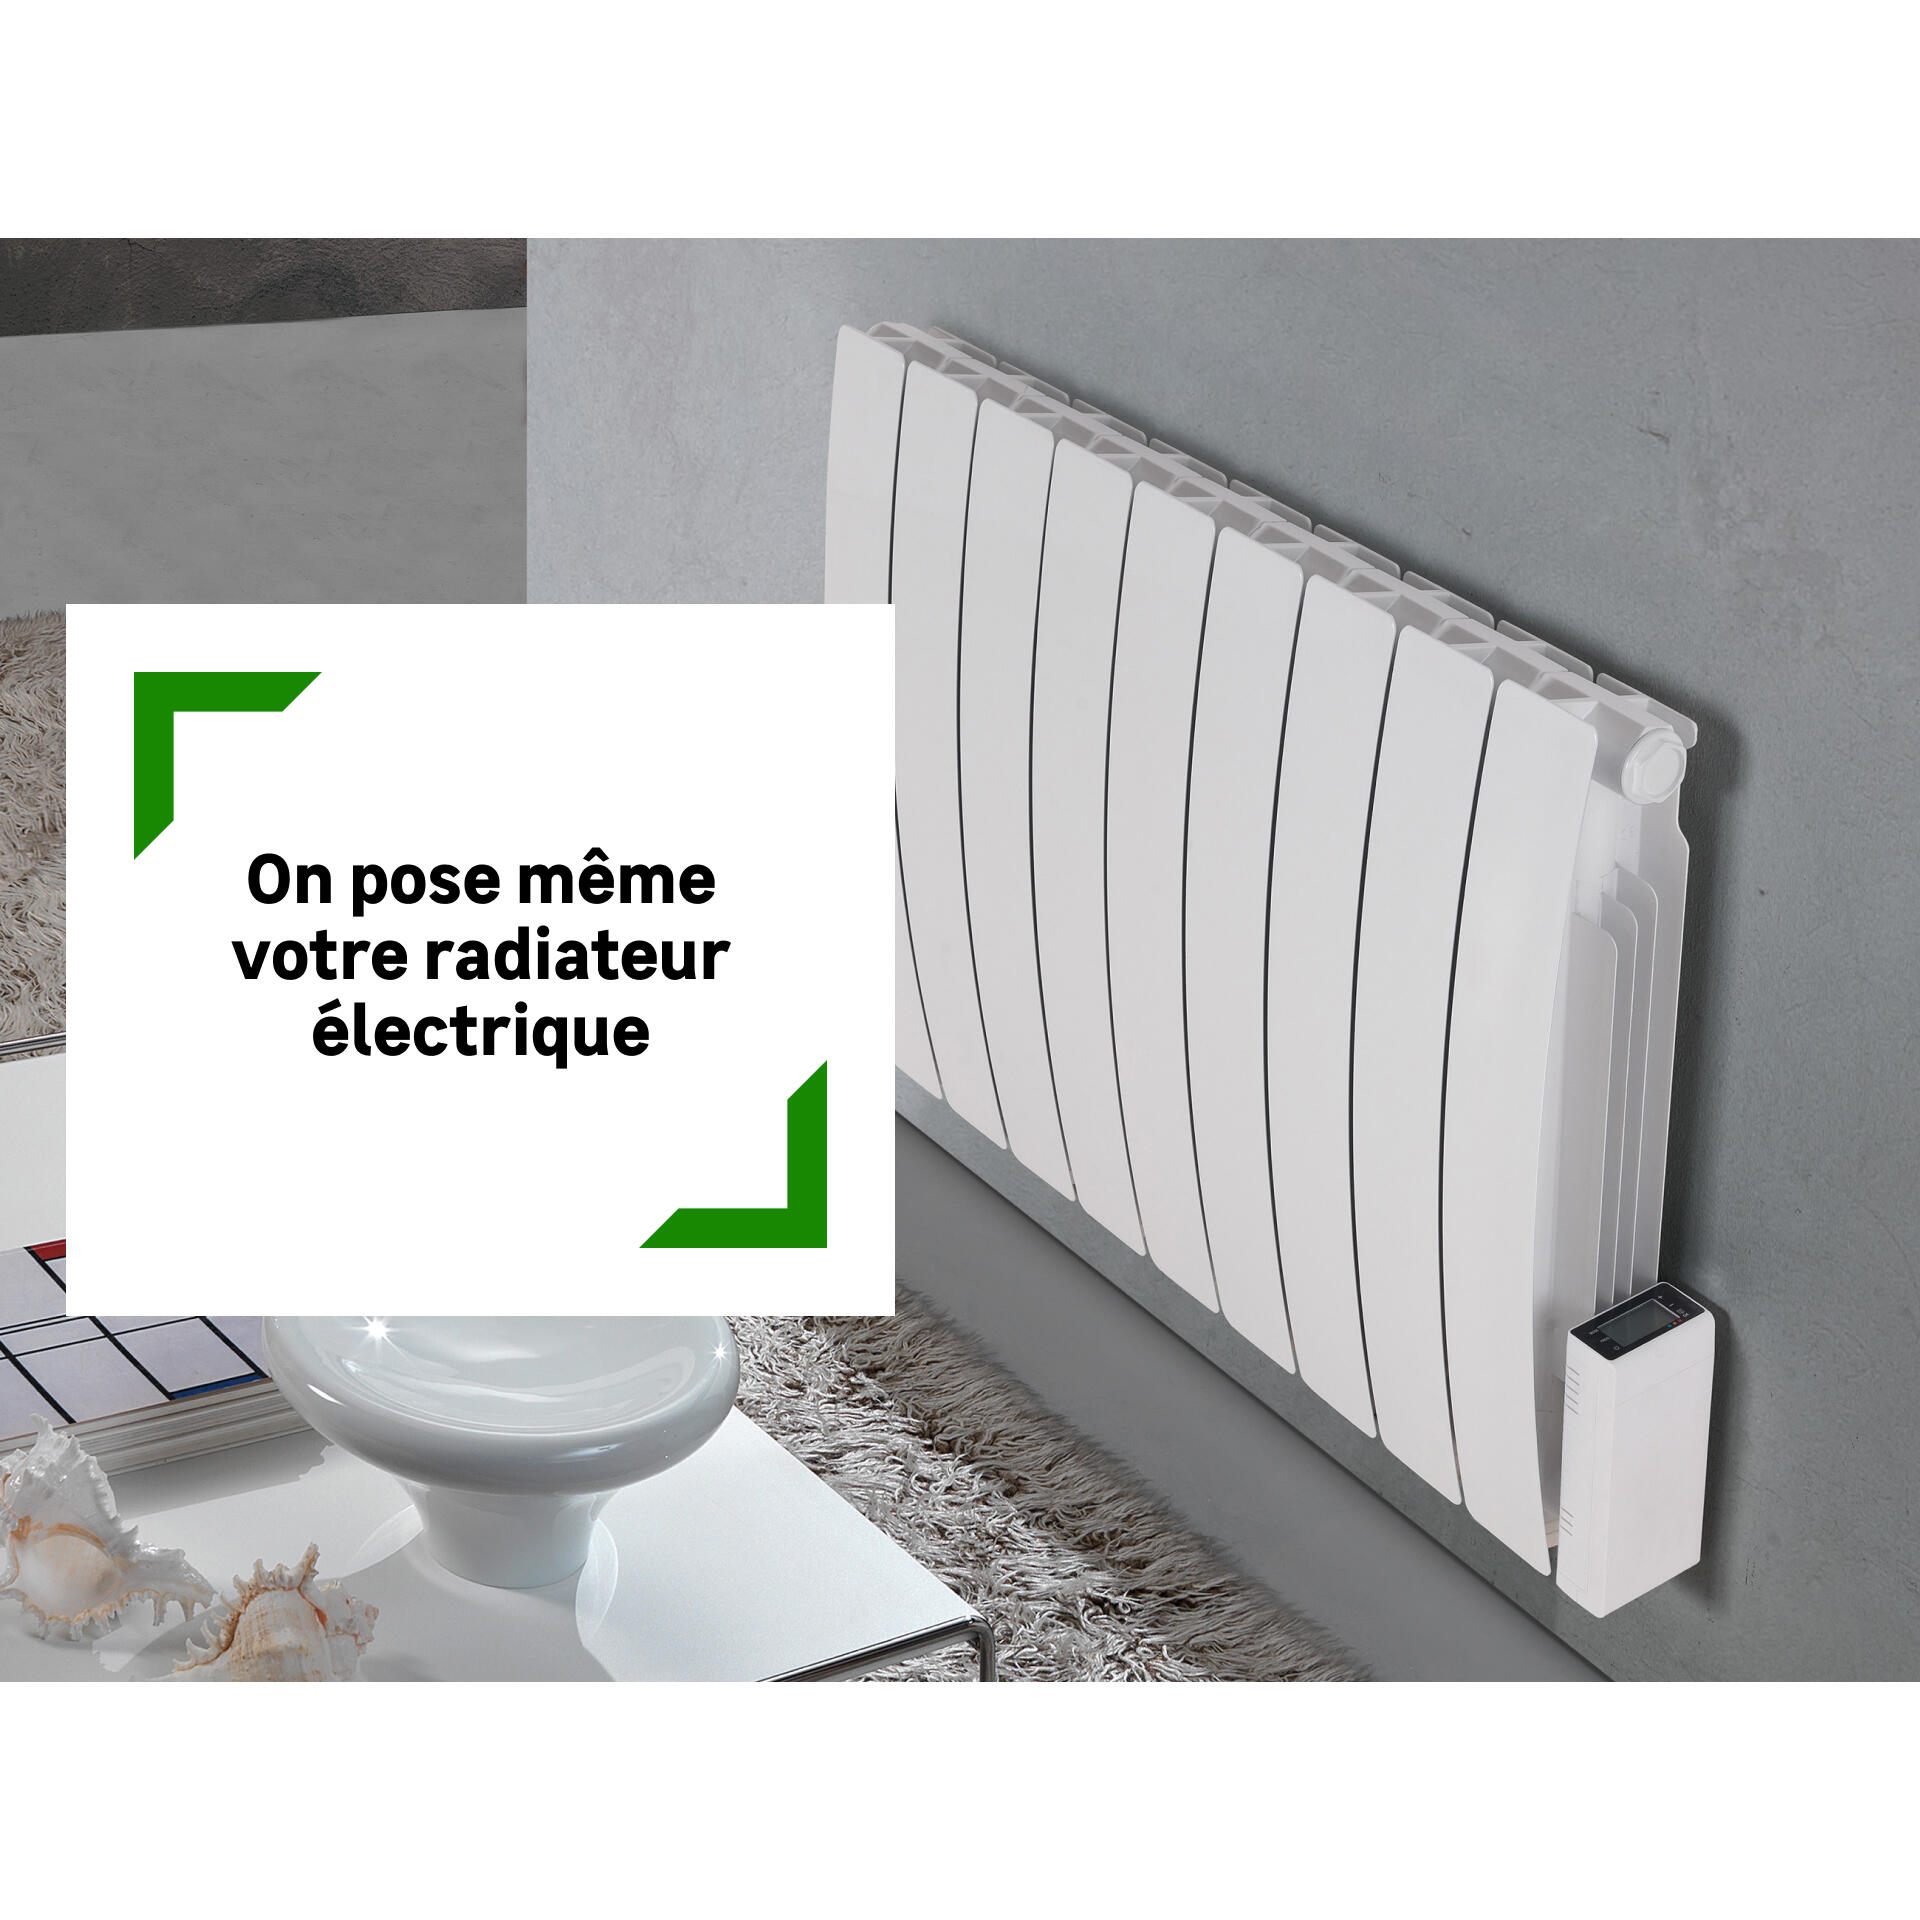 Les avantages d'installer un radiateur mural électrique dans votre maison 